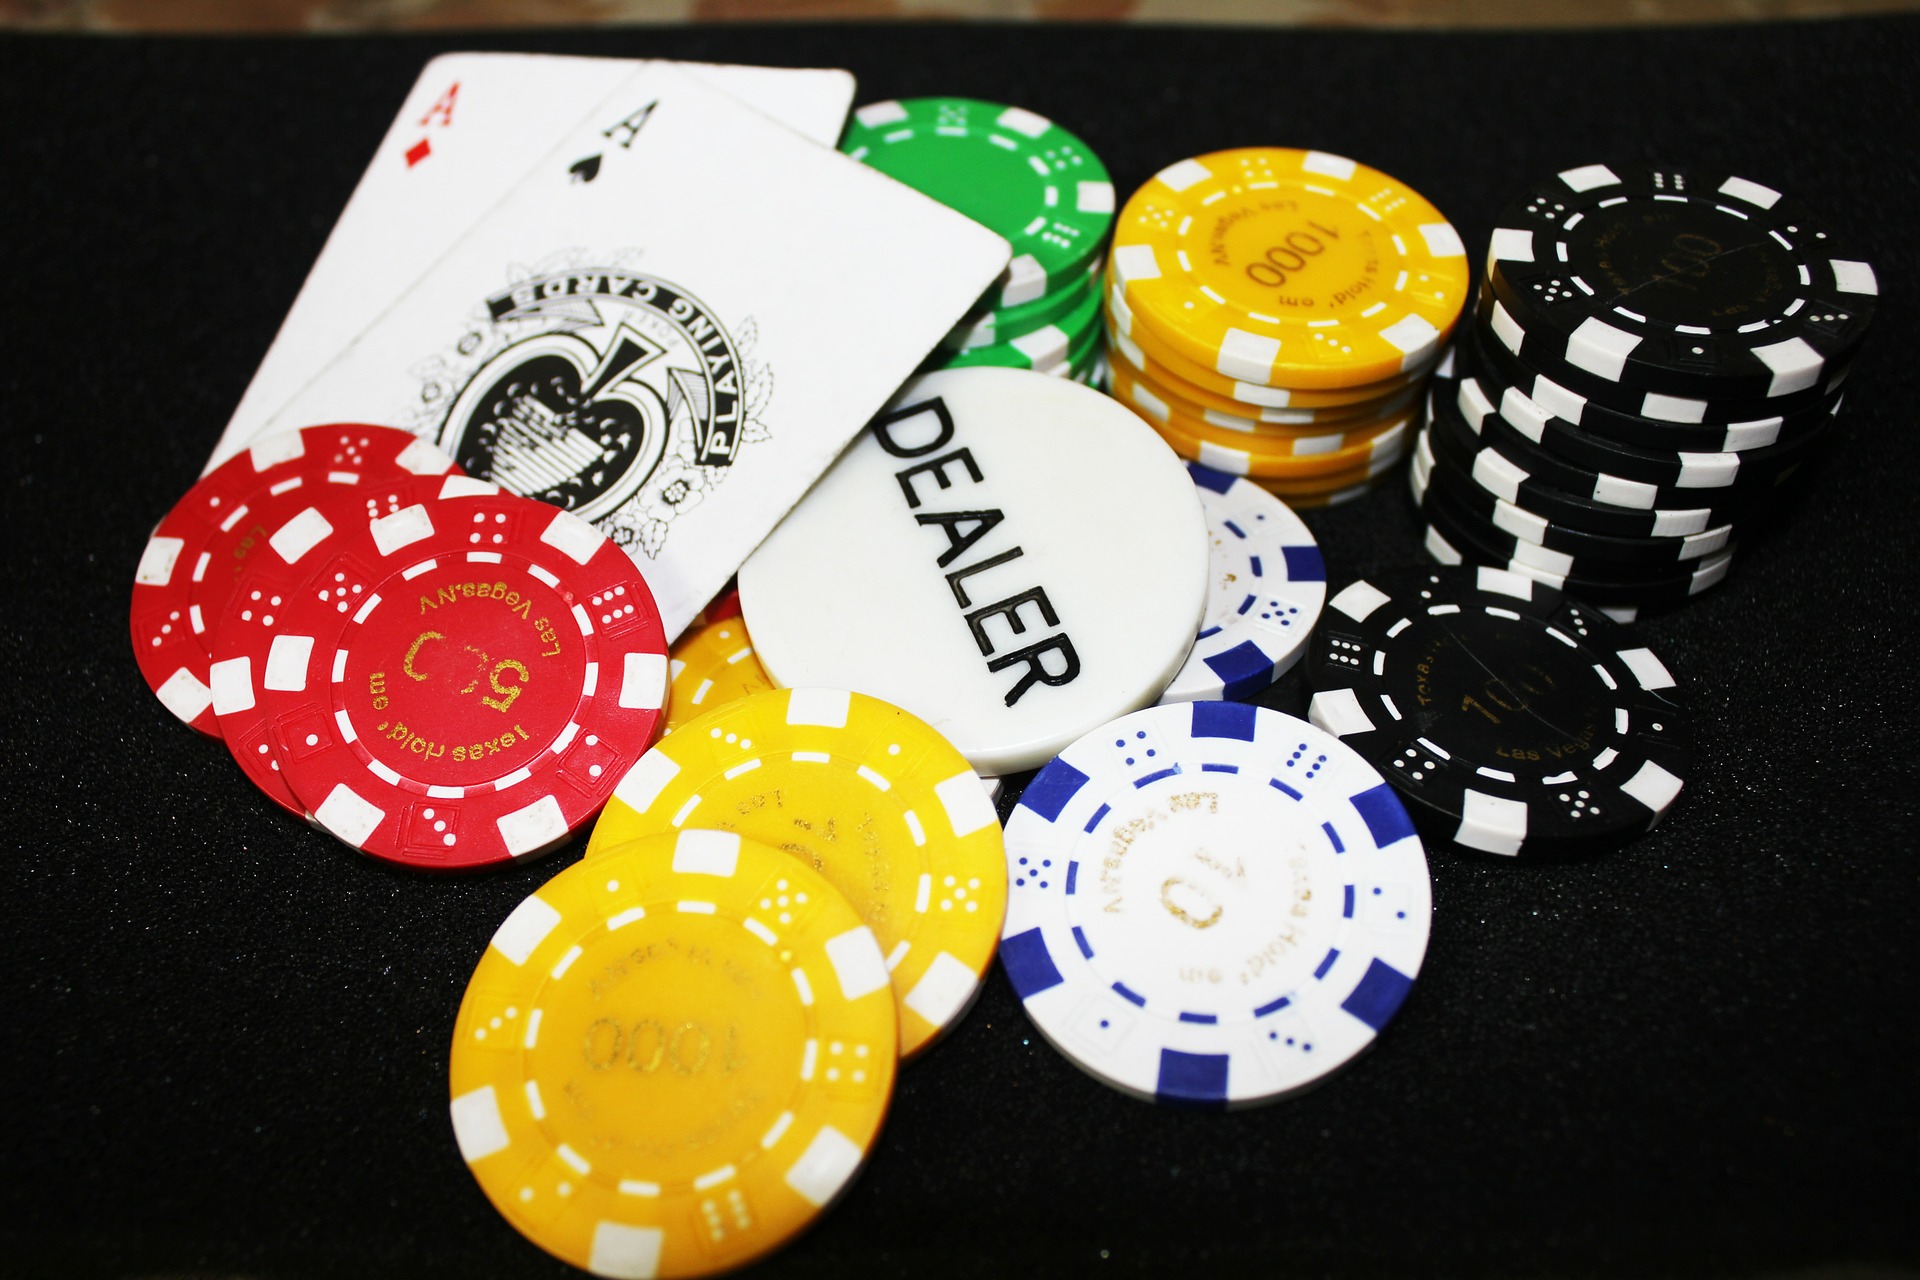 găsiți jocurile blackjack de top pentru bani gheață
